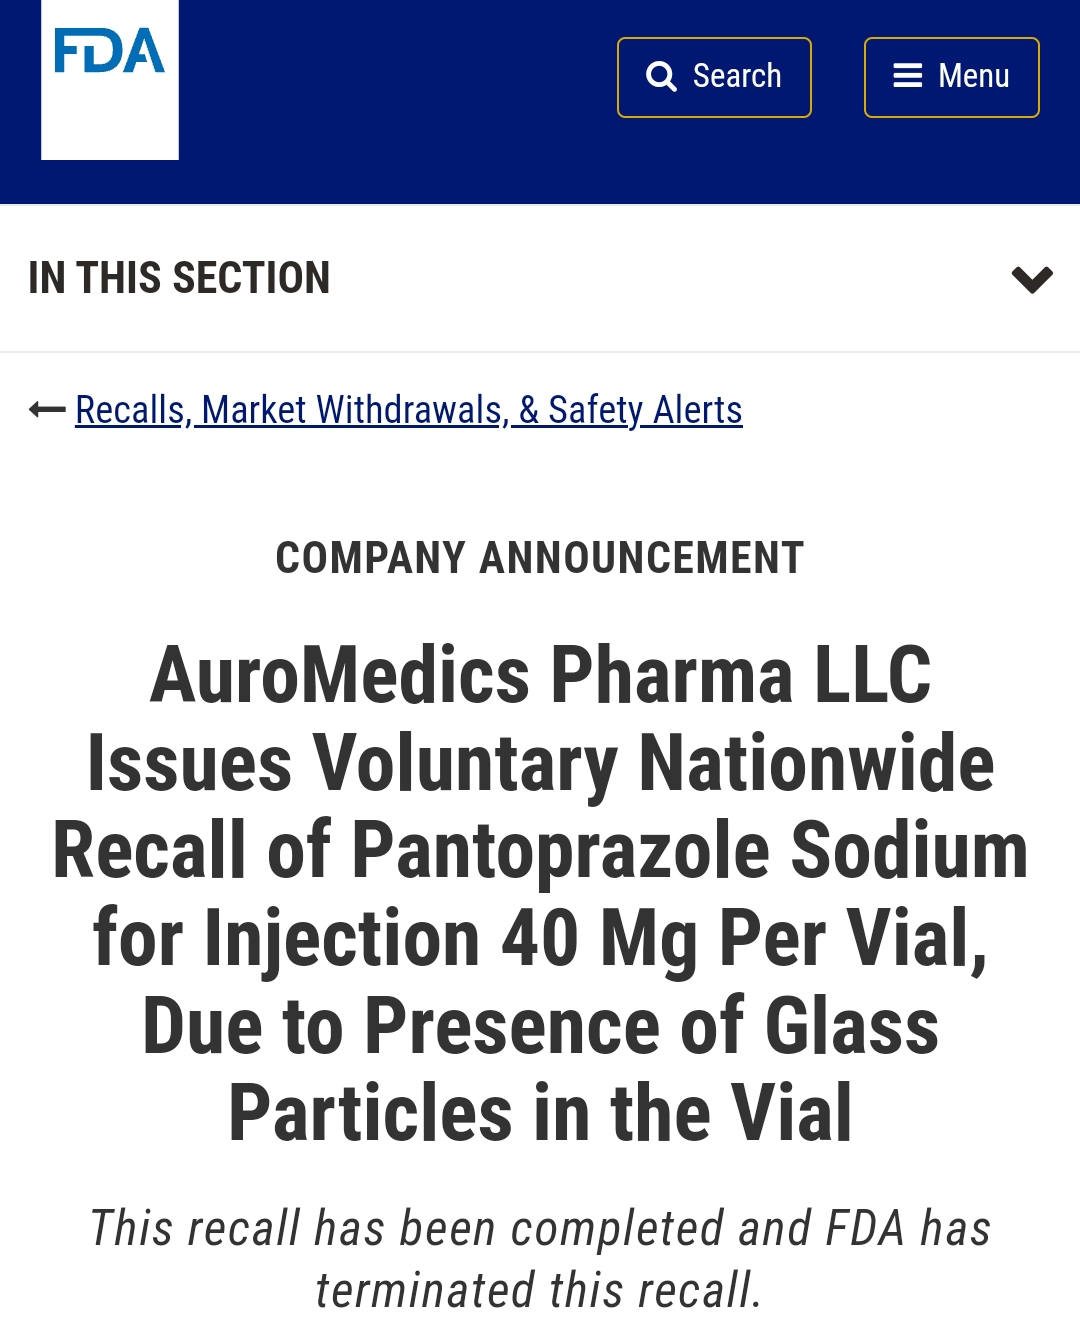 AuroMedics制药也因注射用泮托拉唑钠被投诉有玻璃颗粒而发起召回